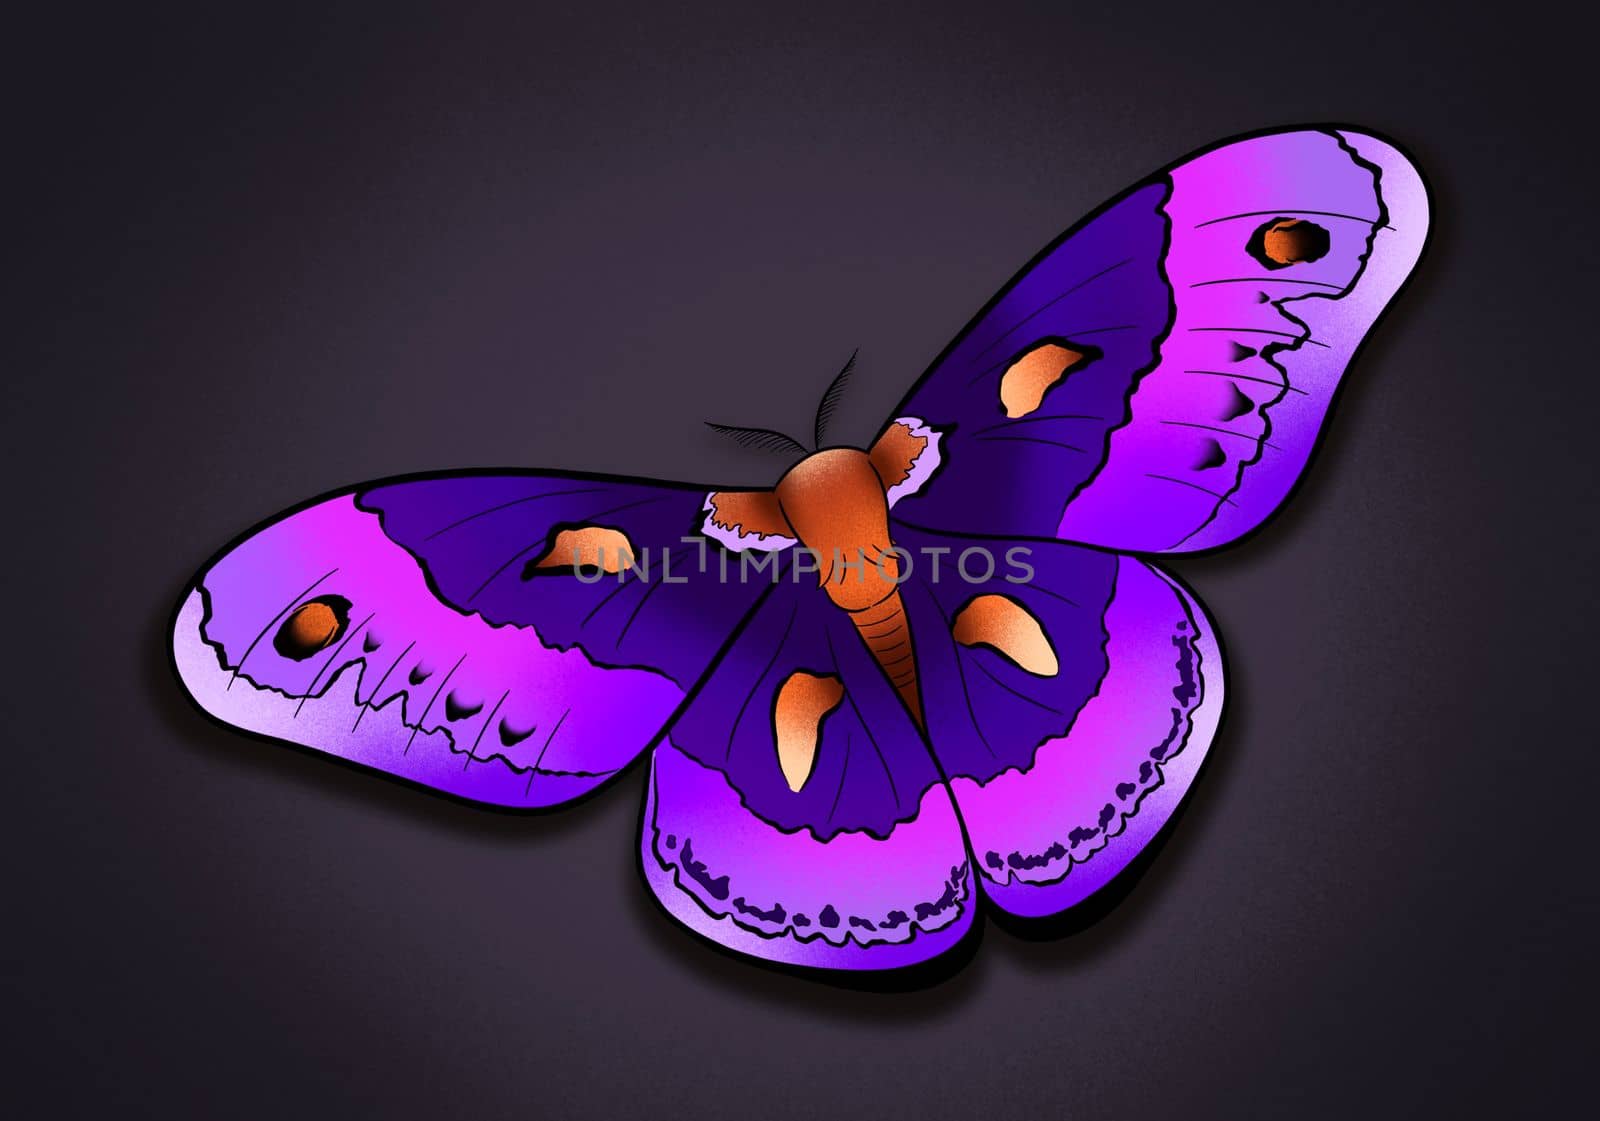 fantastic butterfly moth bright illustration art by kr0k0